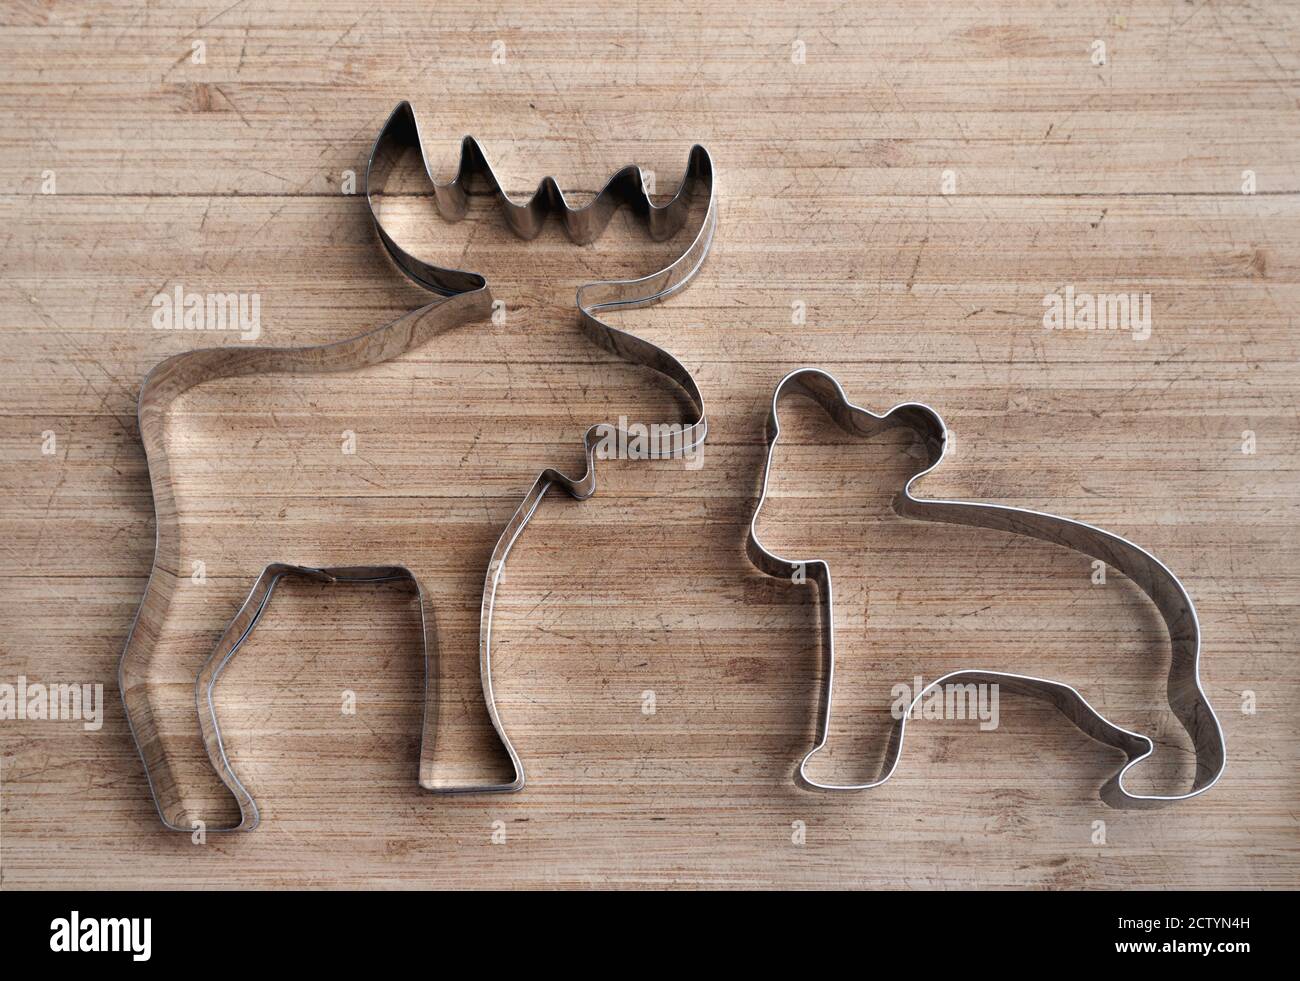 Alce e forma dell'orso in acciaio inox su tavola di legno. Taglierina per biscotti per animali. Simbolo patriottico del Canada. Profilo in argento. Foto Stock